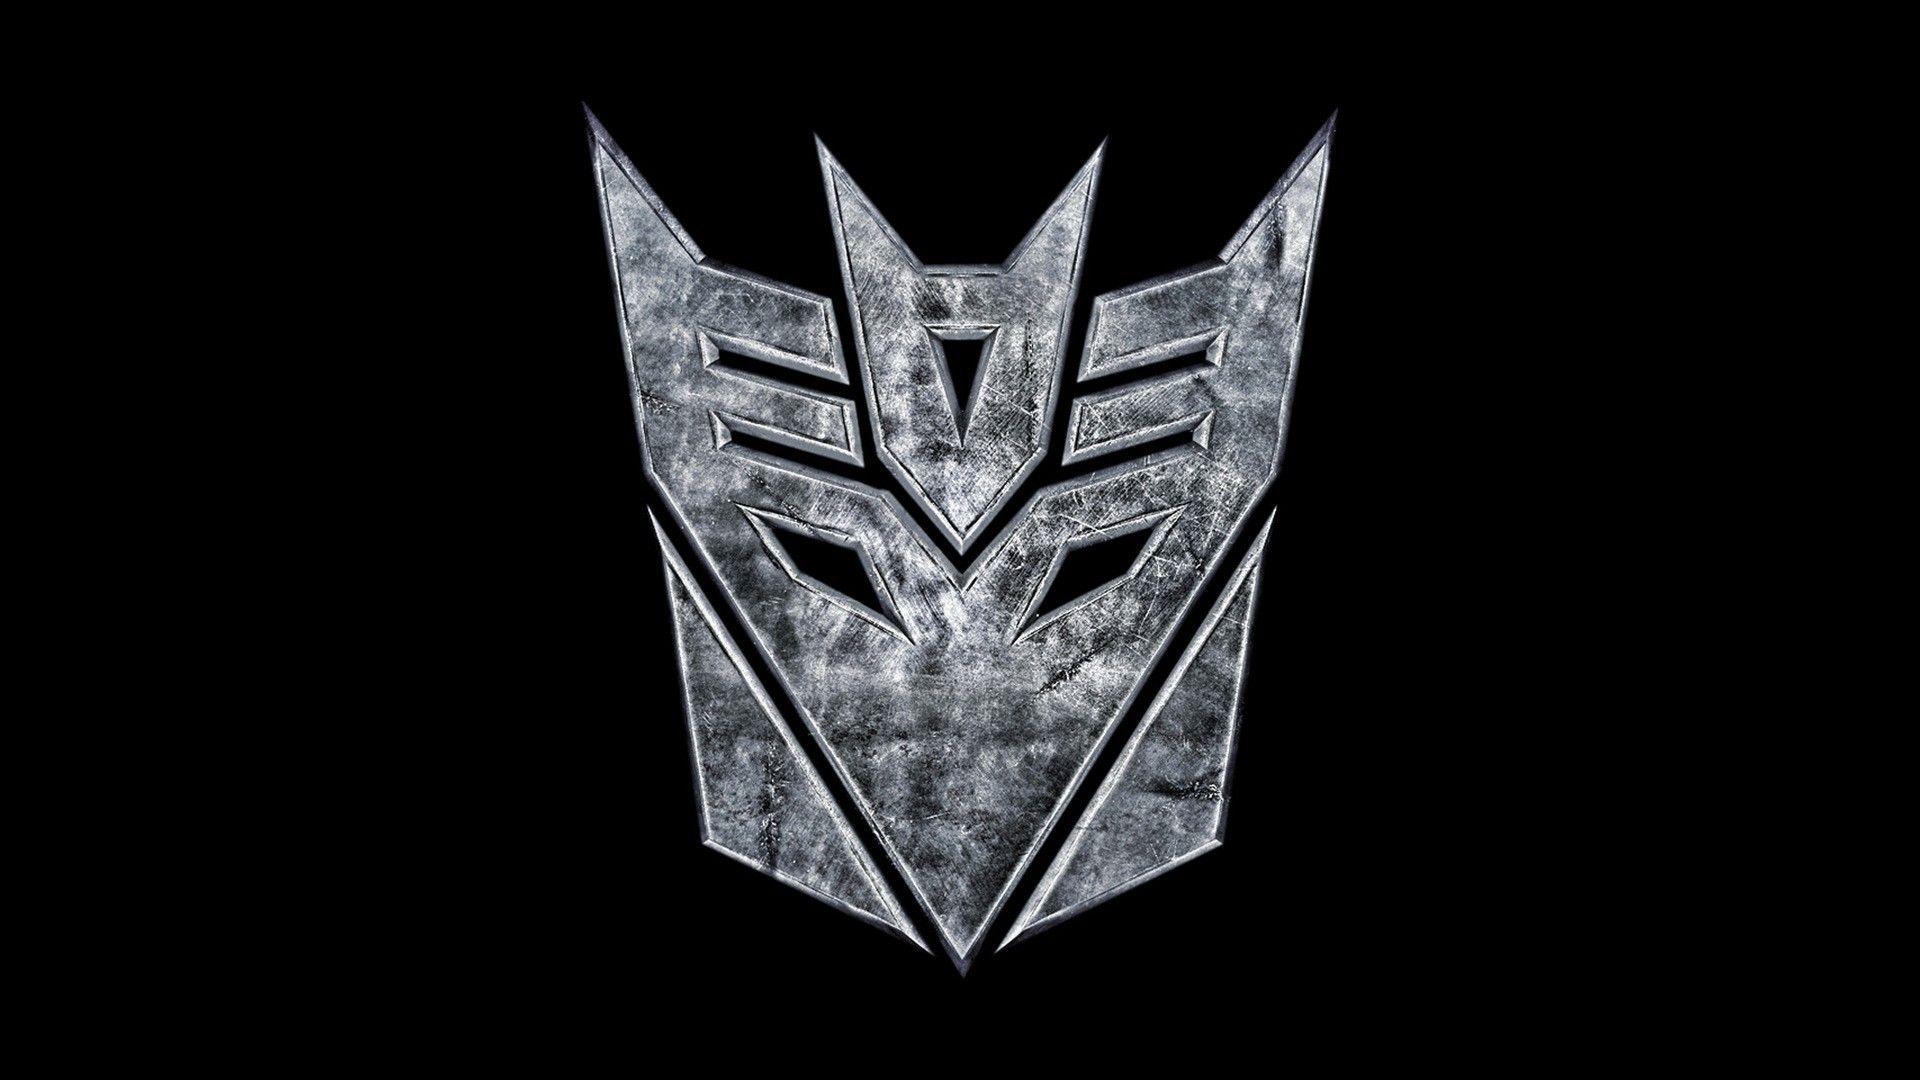 Free Download Cool Transformers Decepticon Logo Wallpaper, HQ